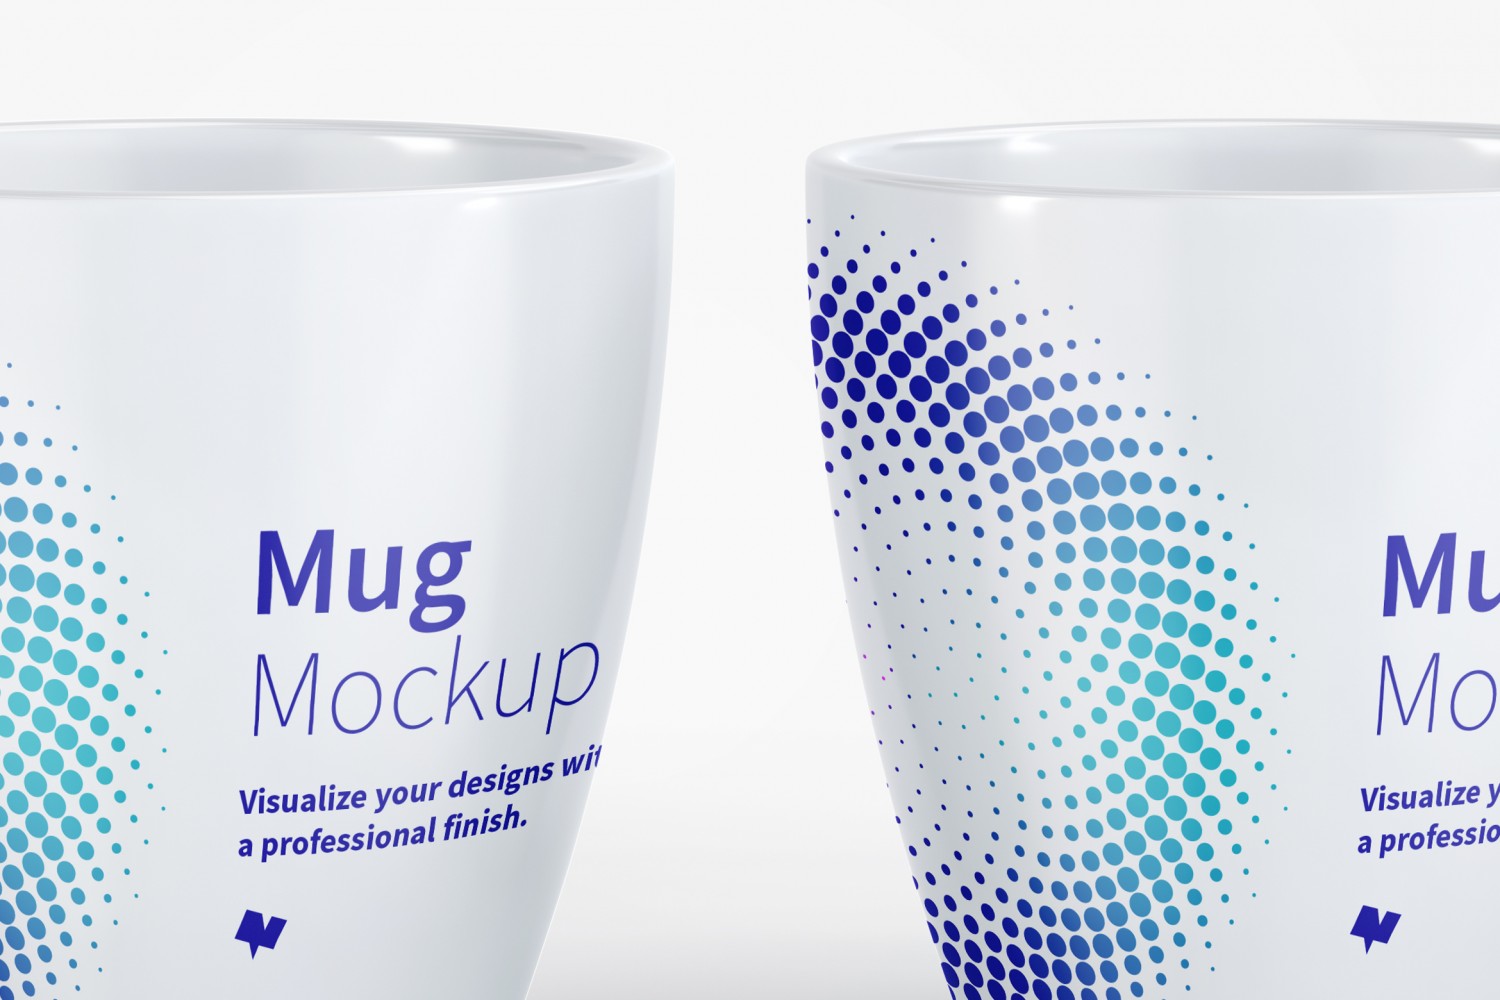 宽口马克杯陶瓷杯图案设计展示第一素材精选v10 Mug Mockup 10插图